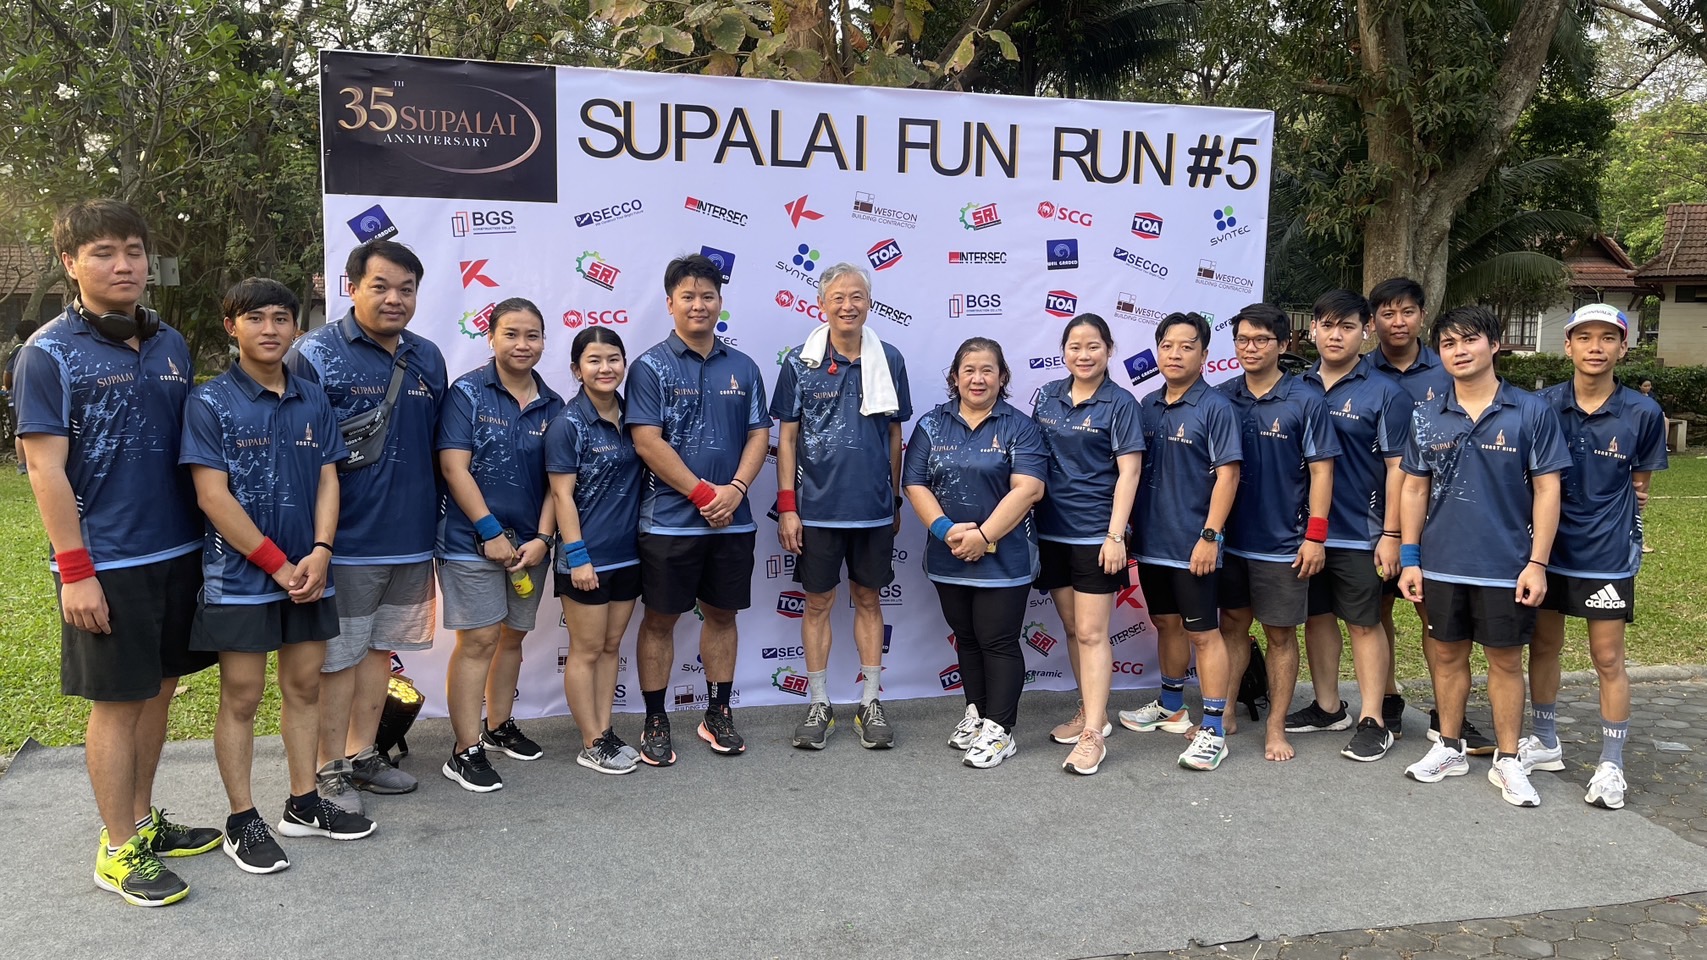 Supalai Fun Run #5